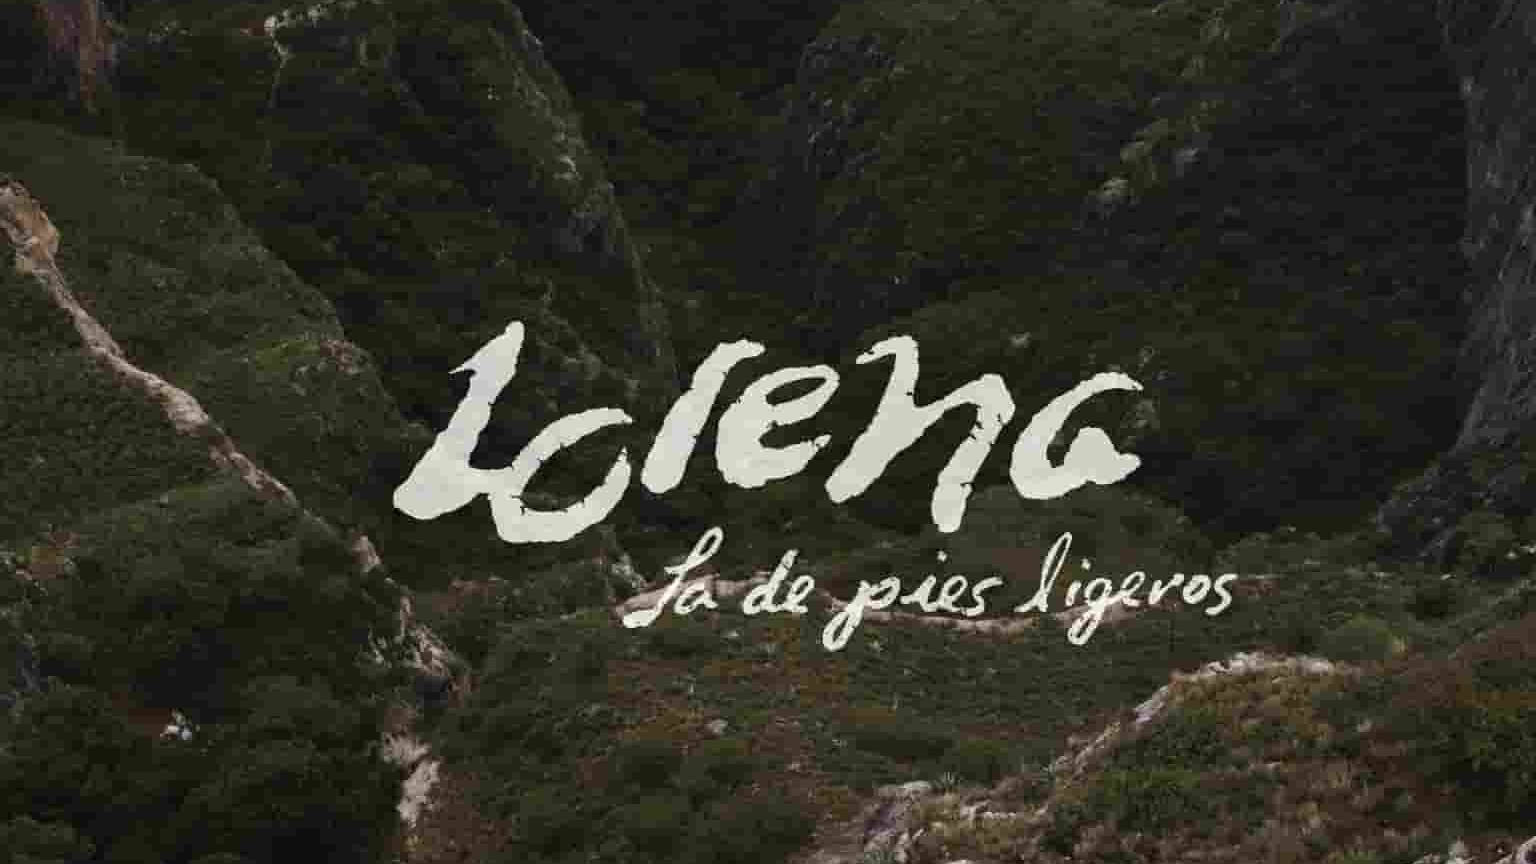 墨西哥纪录片《健跑女孩 Lorena, La de Pies Ligeros 2019》全1集 墨西哥语中字 1080P高清网盘下载